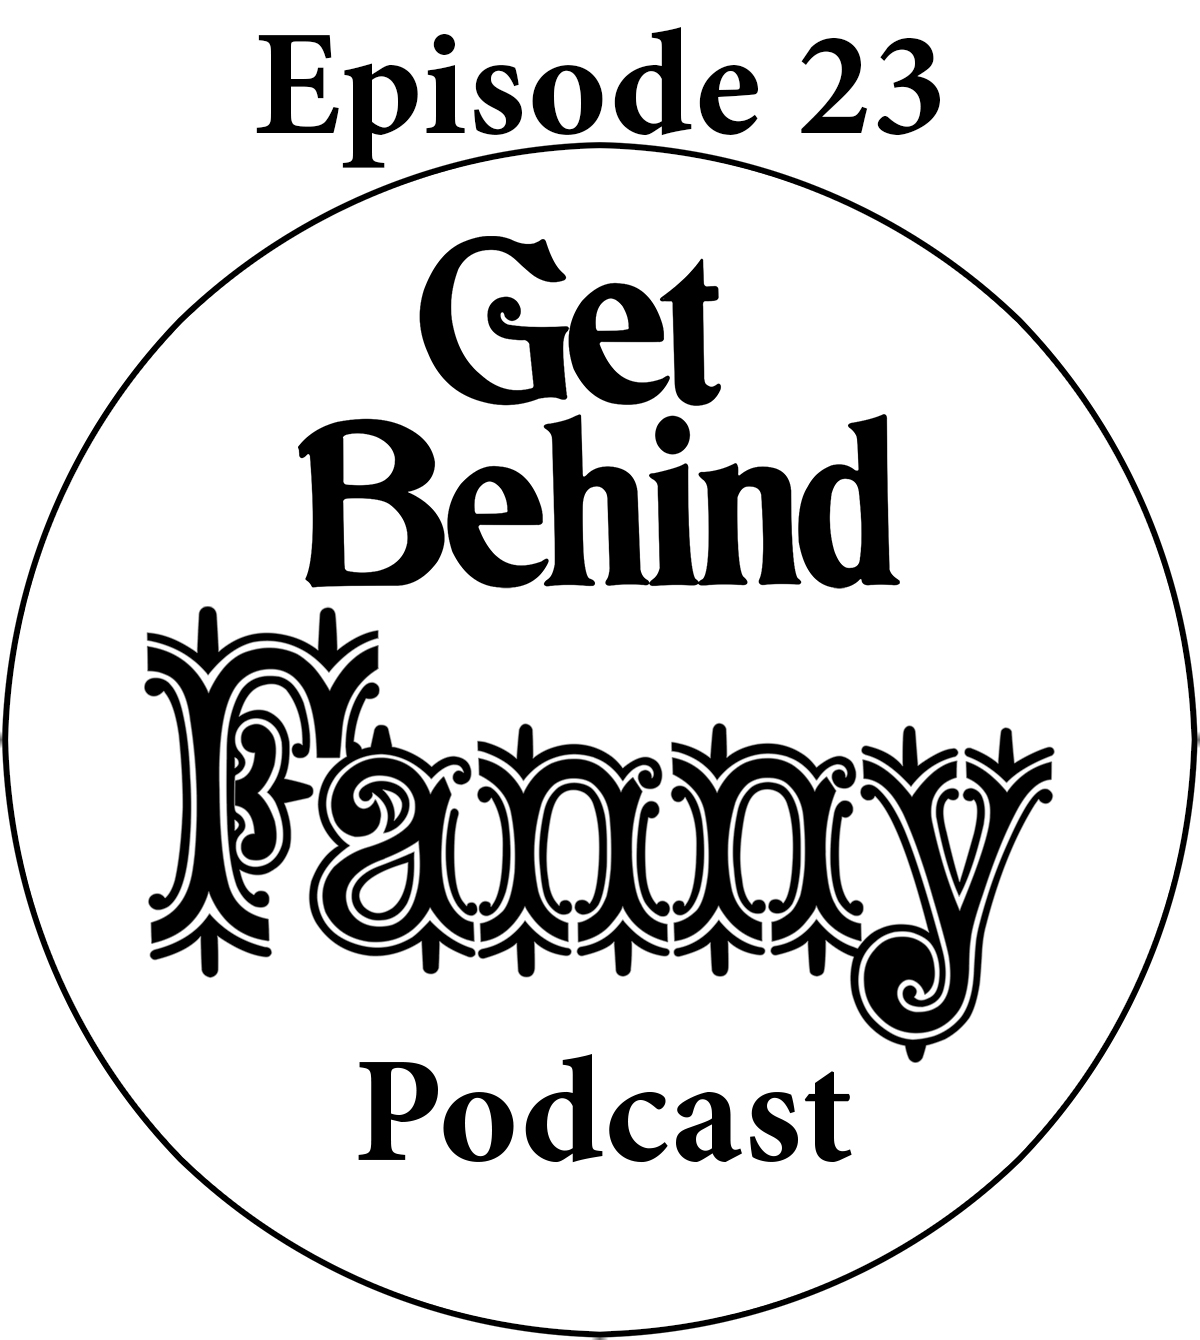 Get Behind Fanny: Episode 23